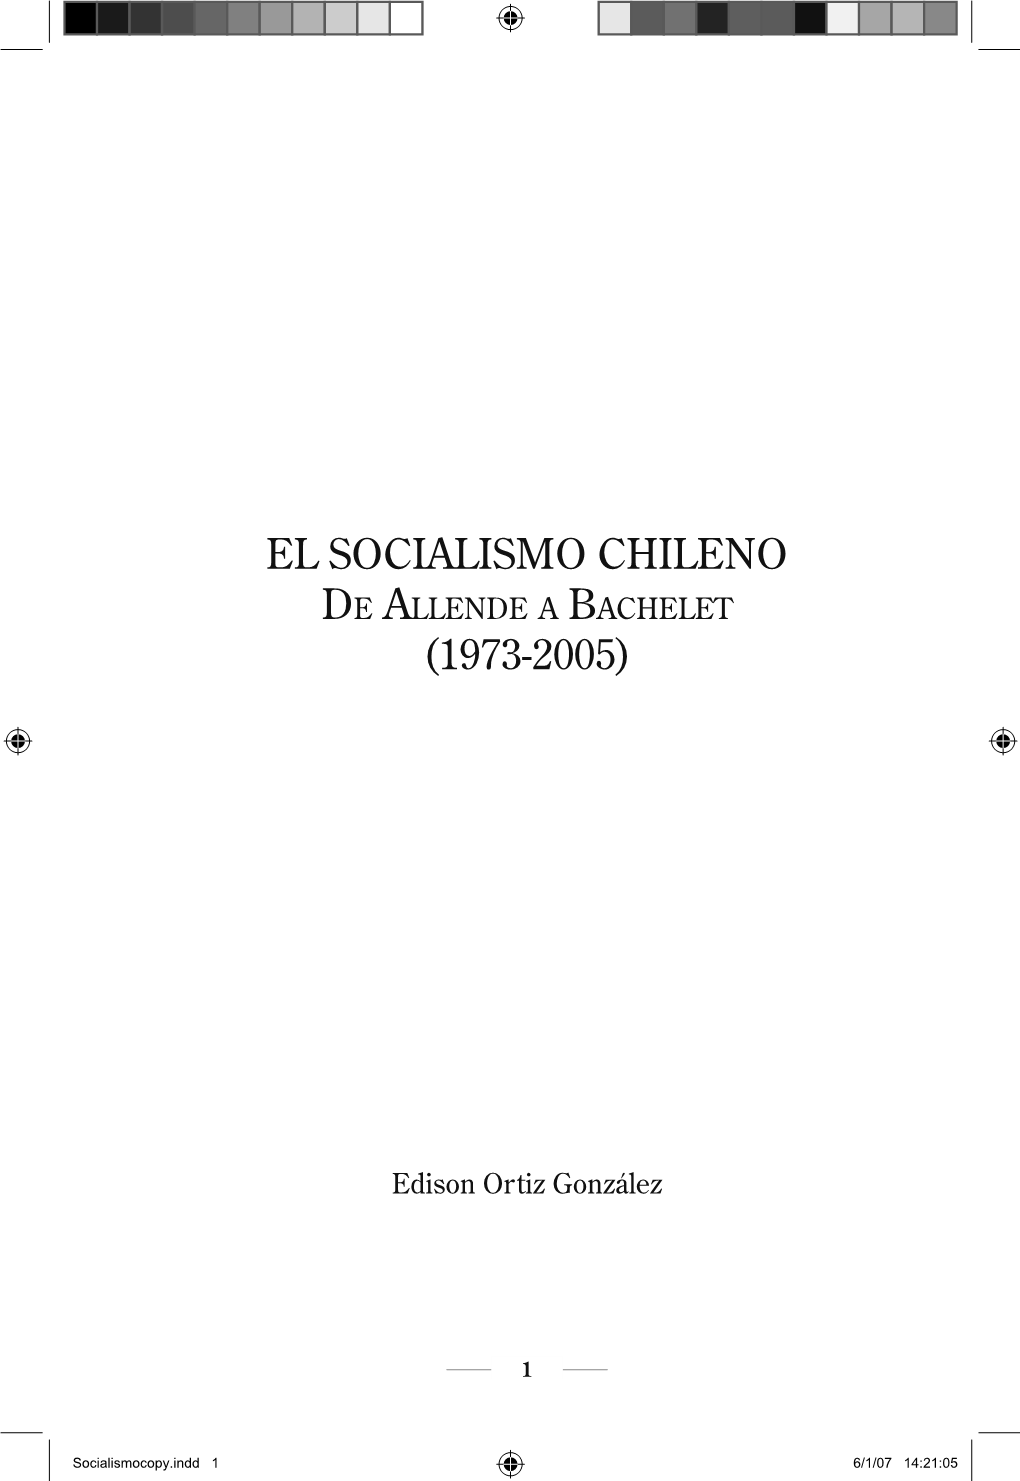 El Socialismo Chileno De Allende a Bachelet (1973-2005)